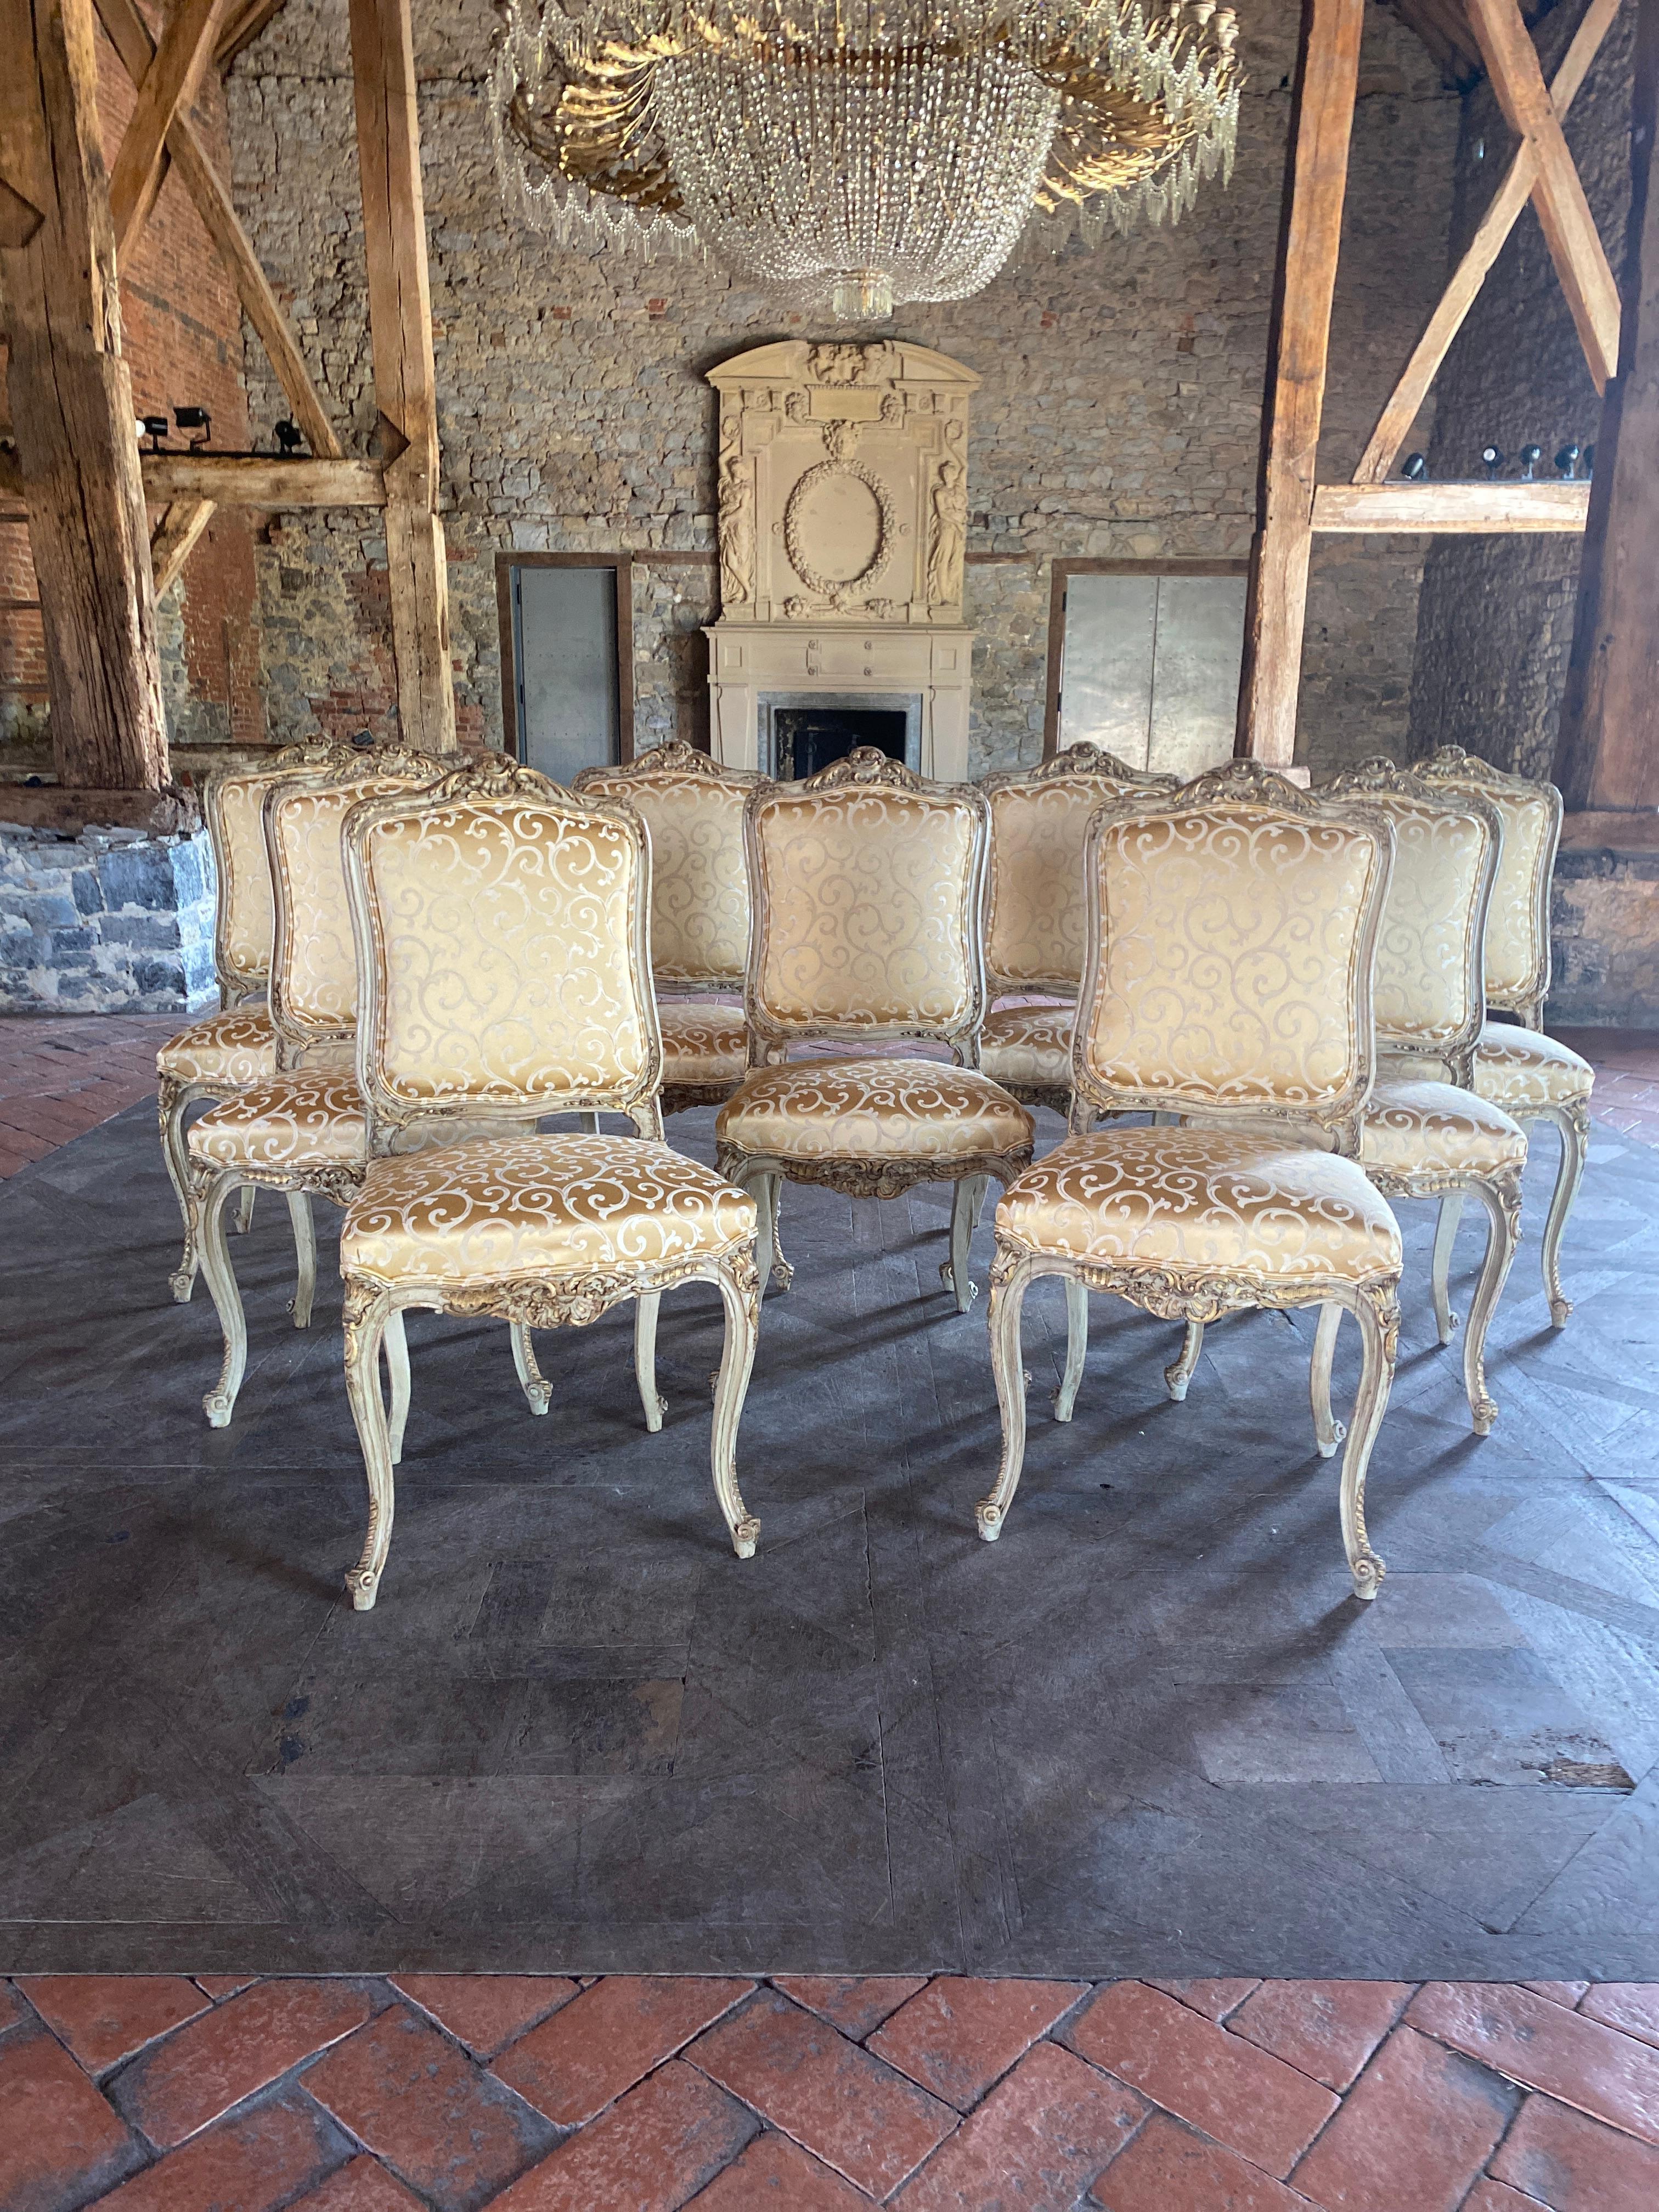 magnifique ensemble de 9 chaises polychromes originales très joliment sculptées nouvelle tapisserie avec tissu de soie italienne de haute qualité met en valeur l'or sur les sculptures époustouflant.